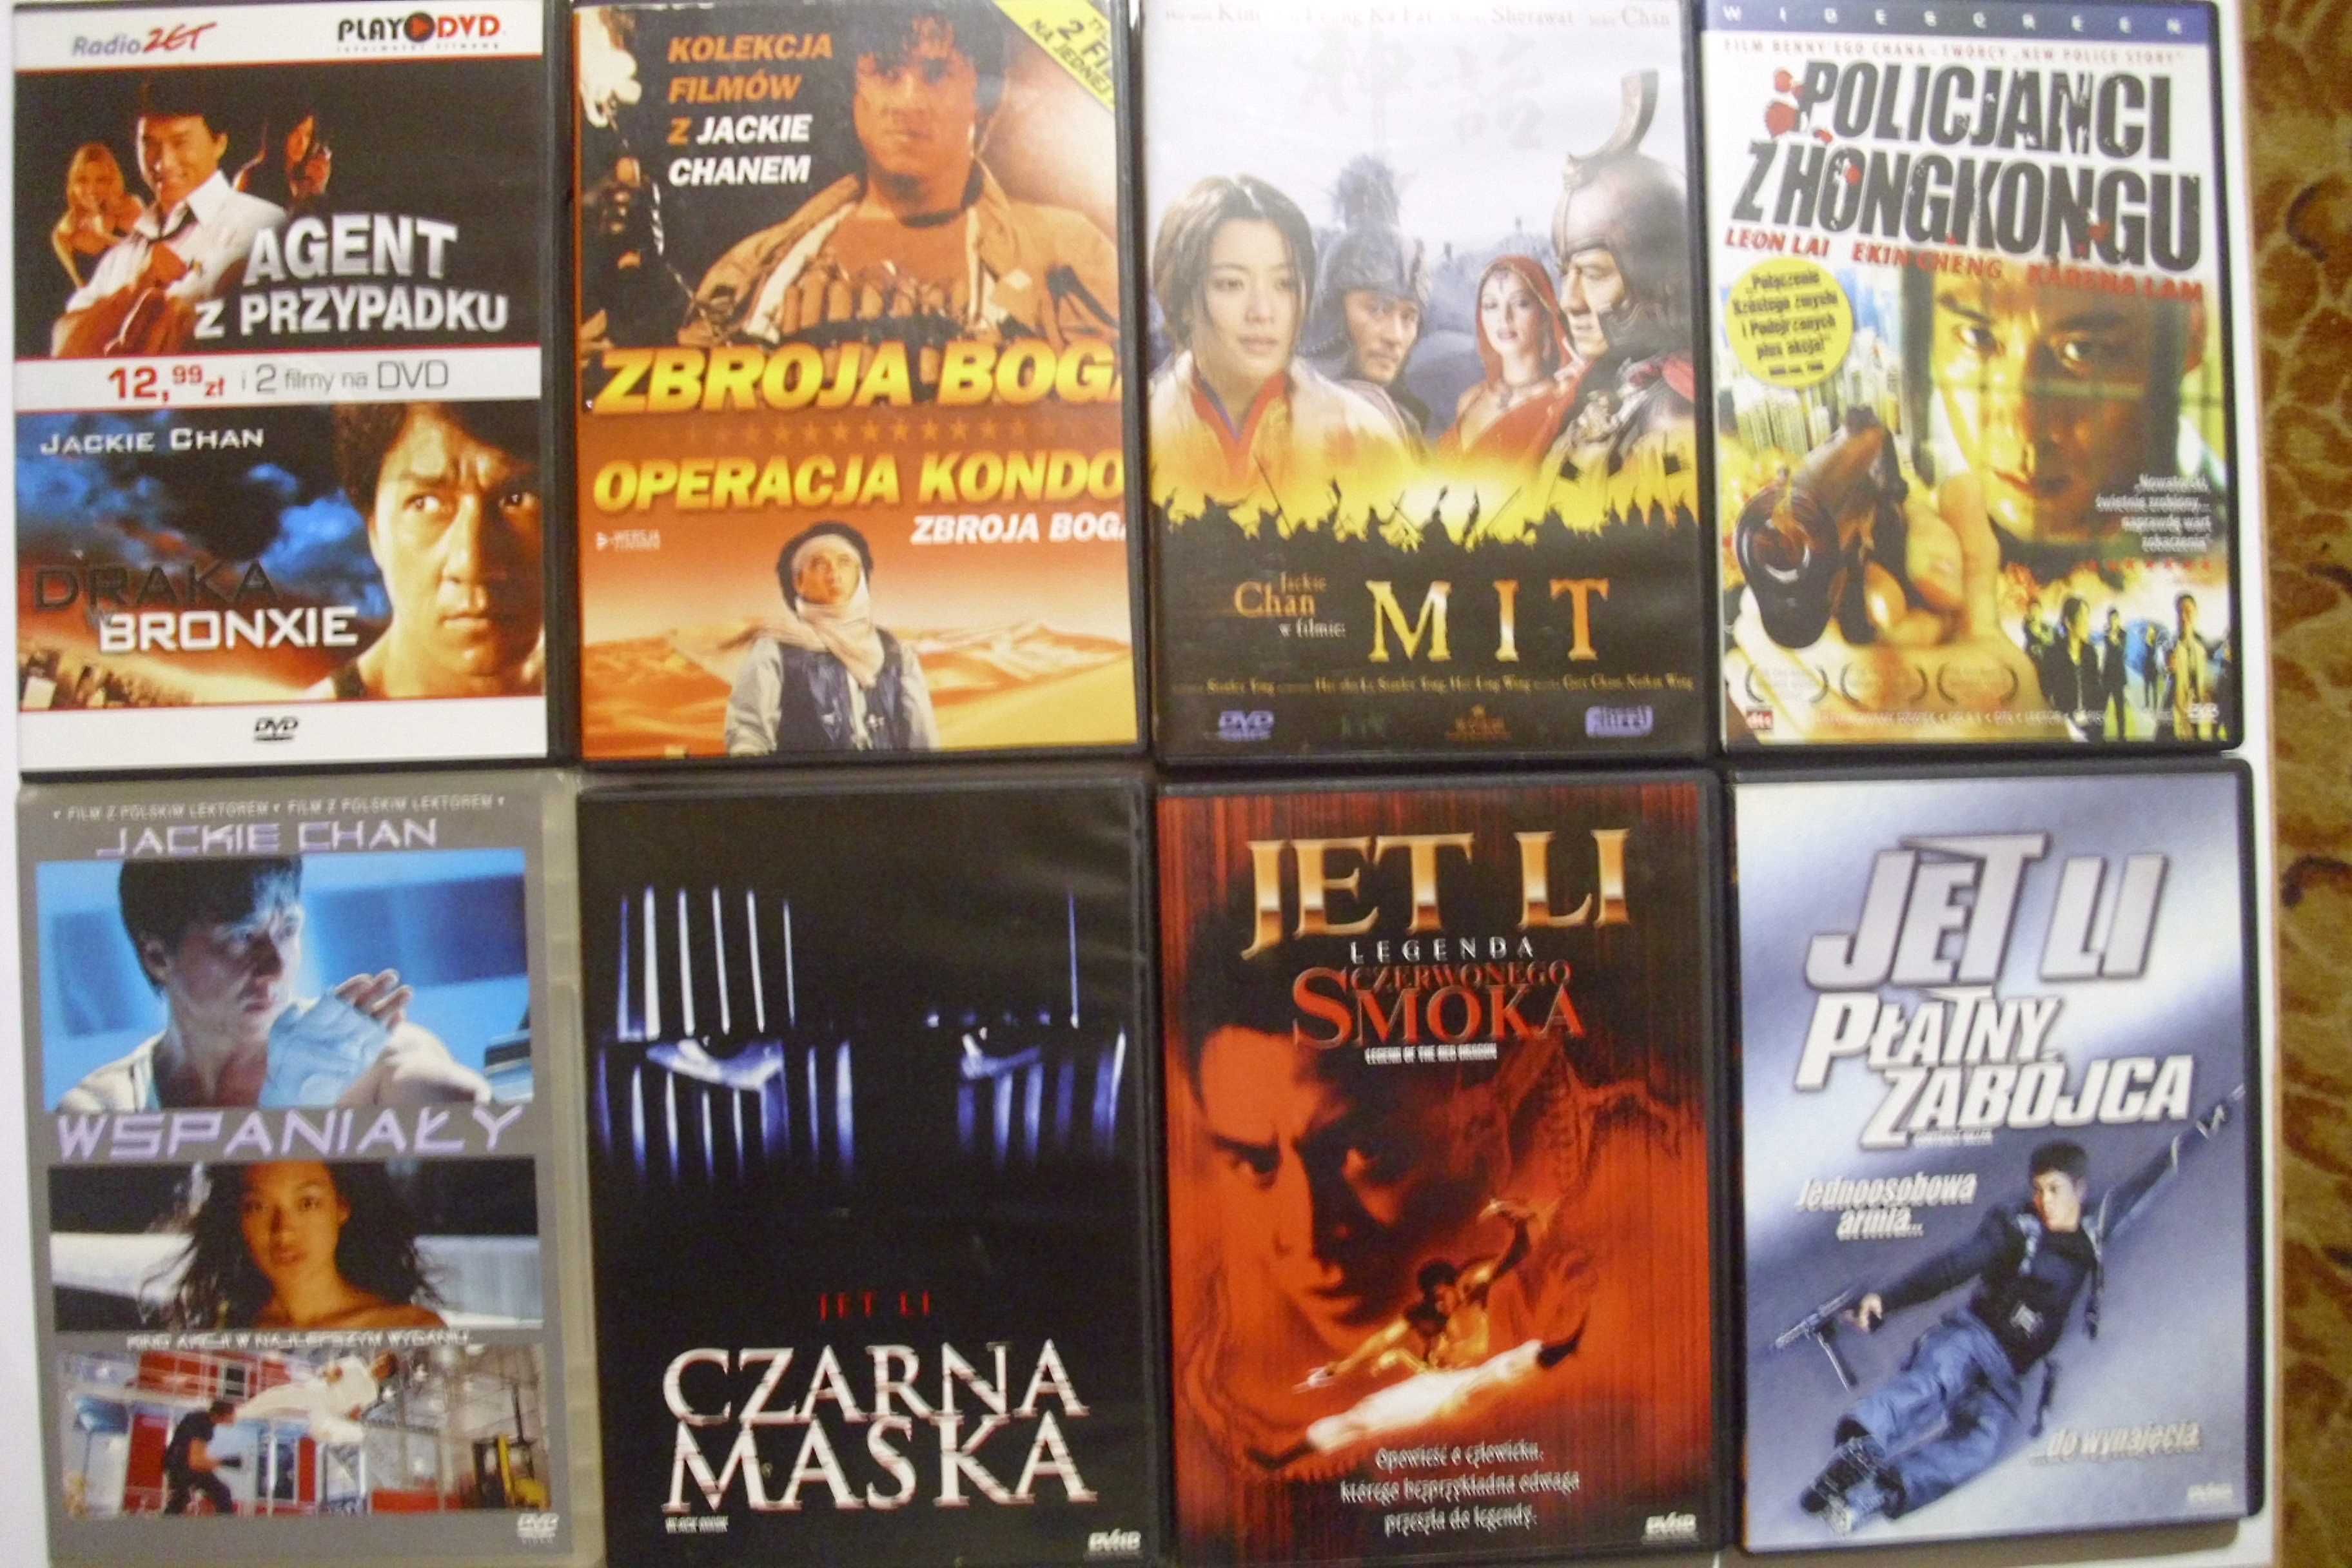 Fimy DVD Płyty stan jak nowe (Unikaty) dużo ciekawych filmów